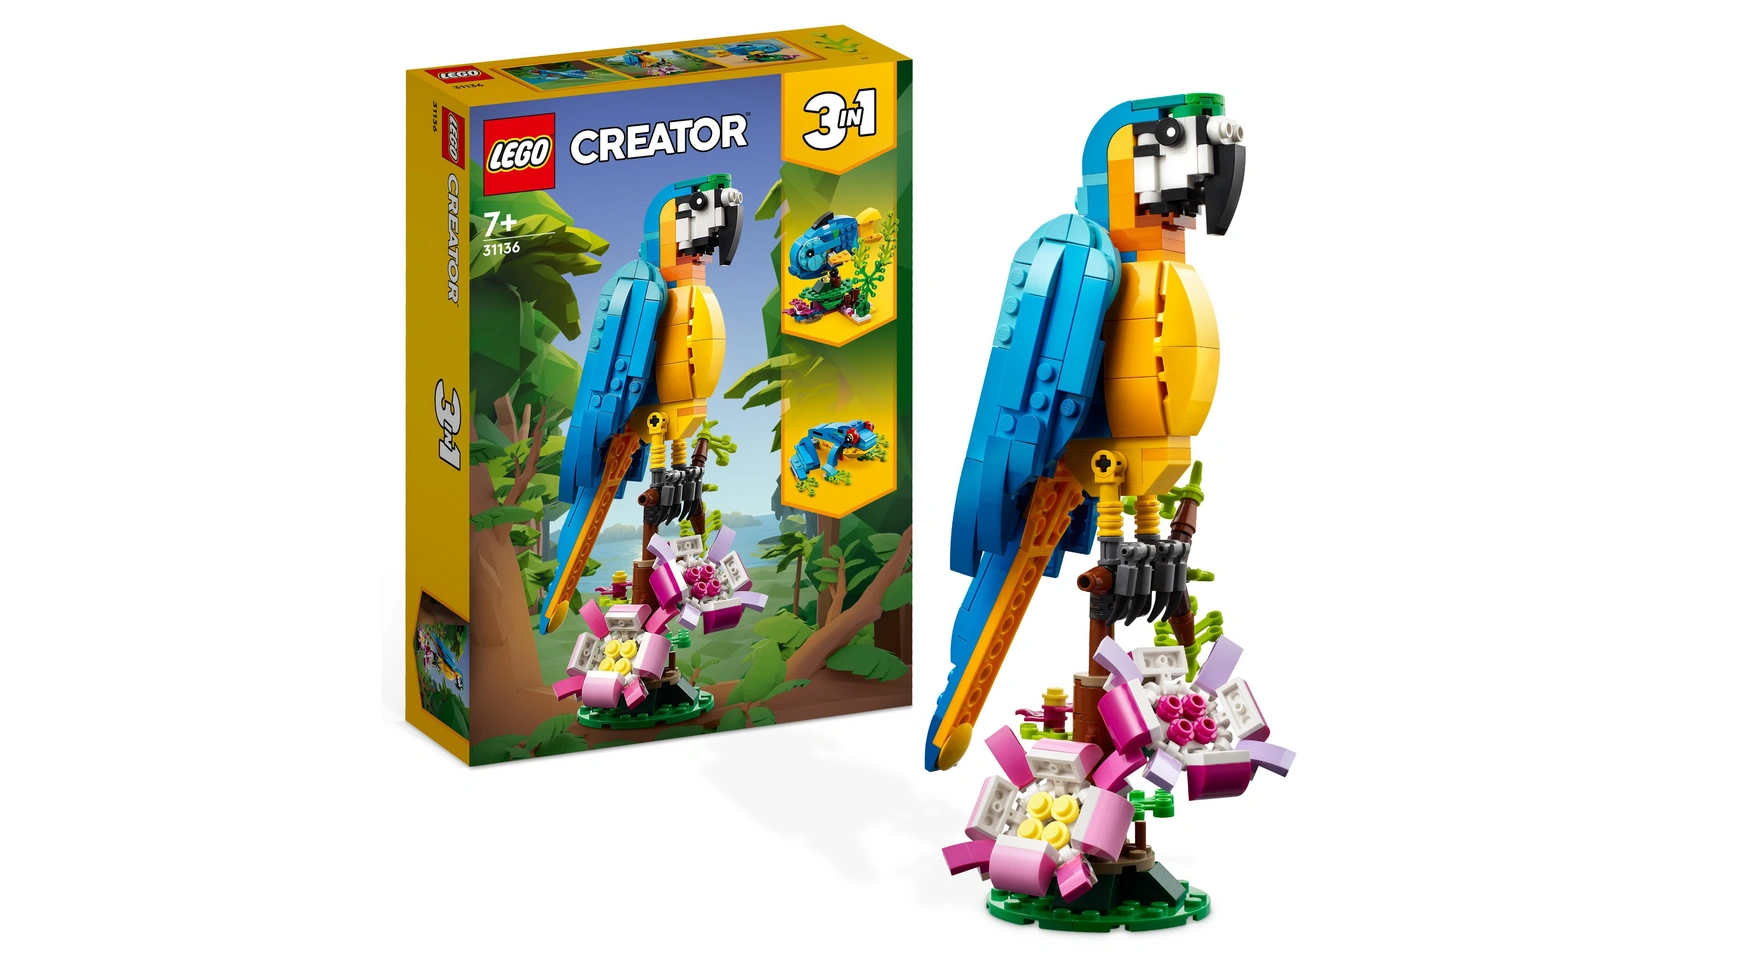 Lego Creator 3in1 Набор игрушек с экзотическими животными-попугаями lego creator 3in1 набор экзотических розовых попугаев с тремя животными